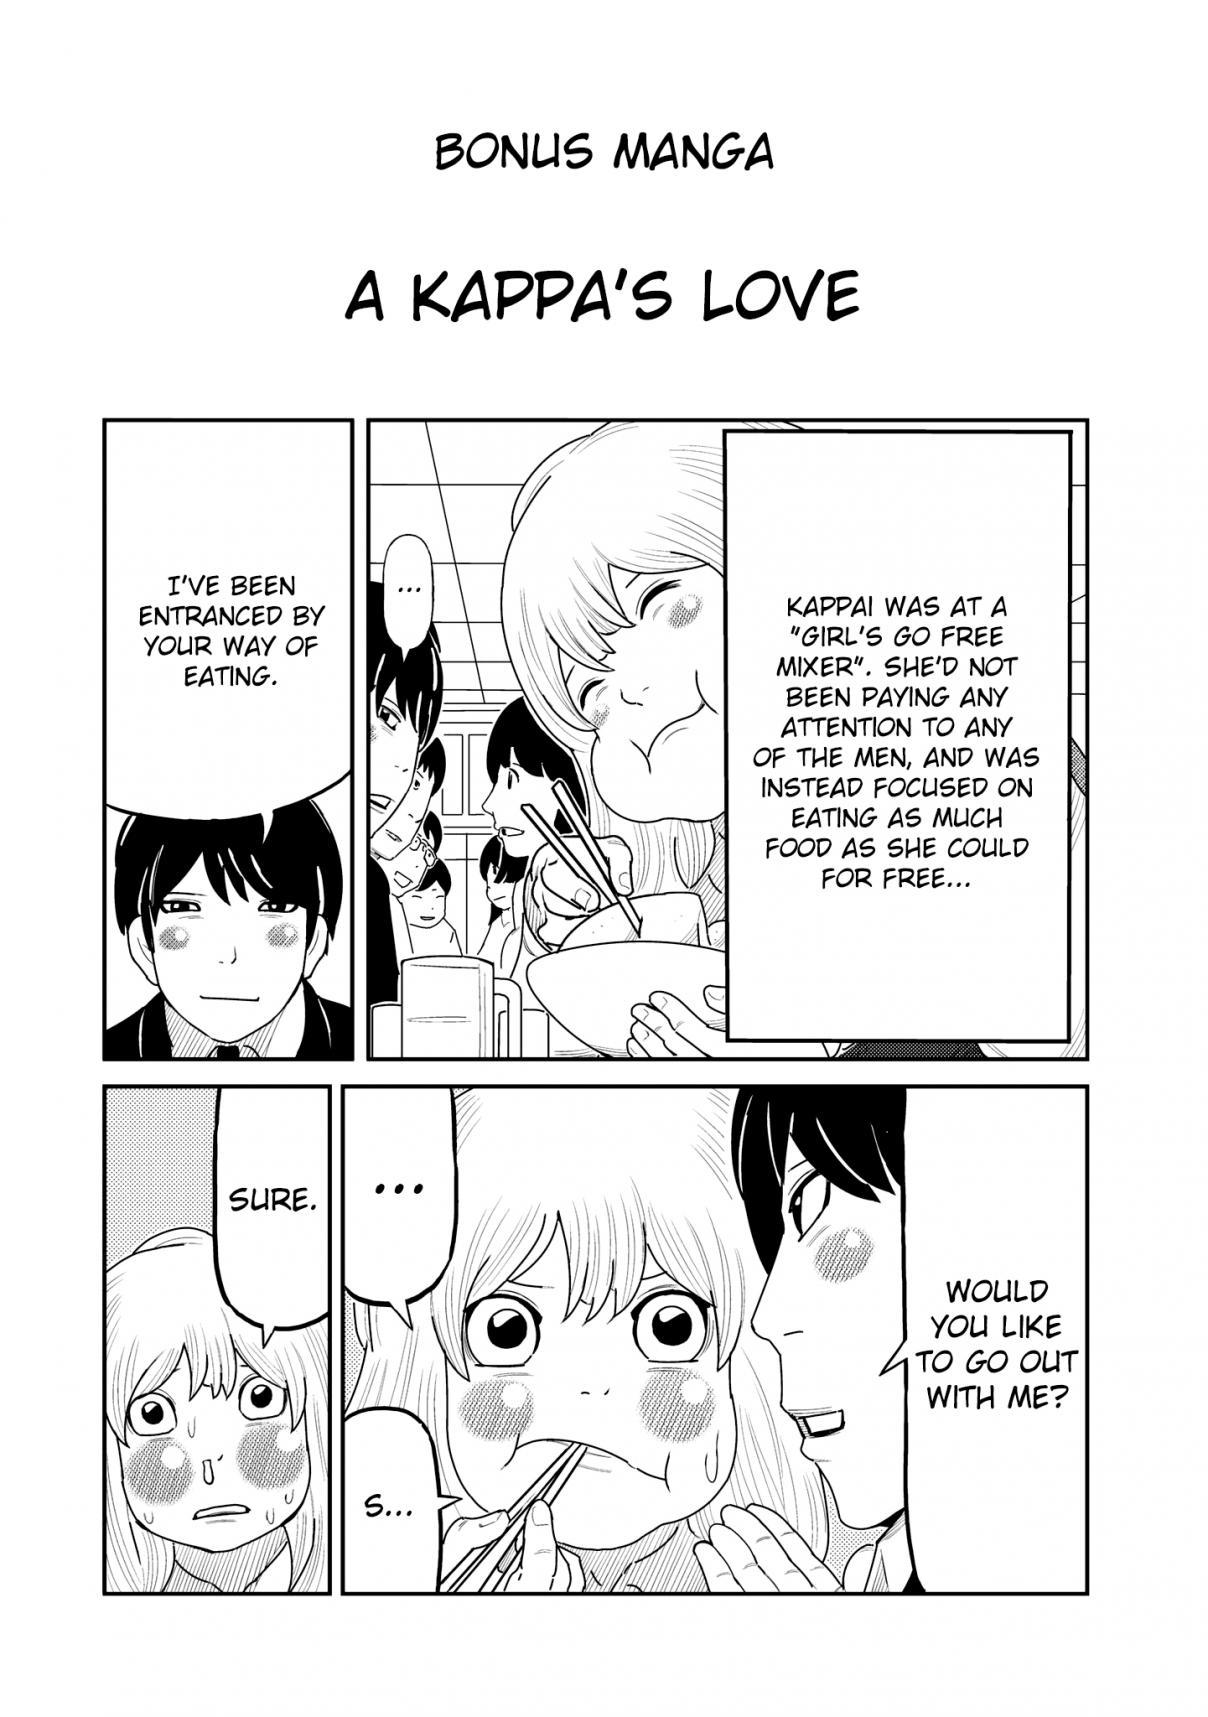 Kaiten One Vol. 3 Ch. 21.5 A Kappa's Love